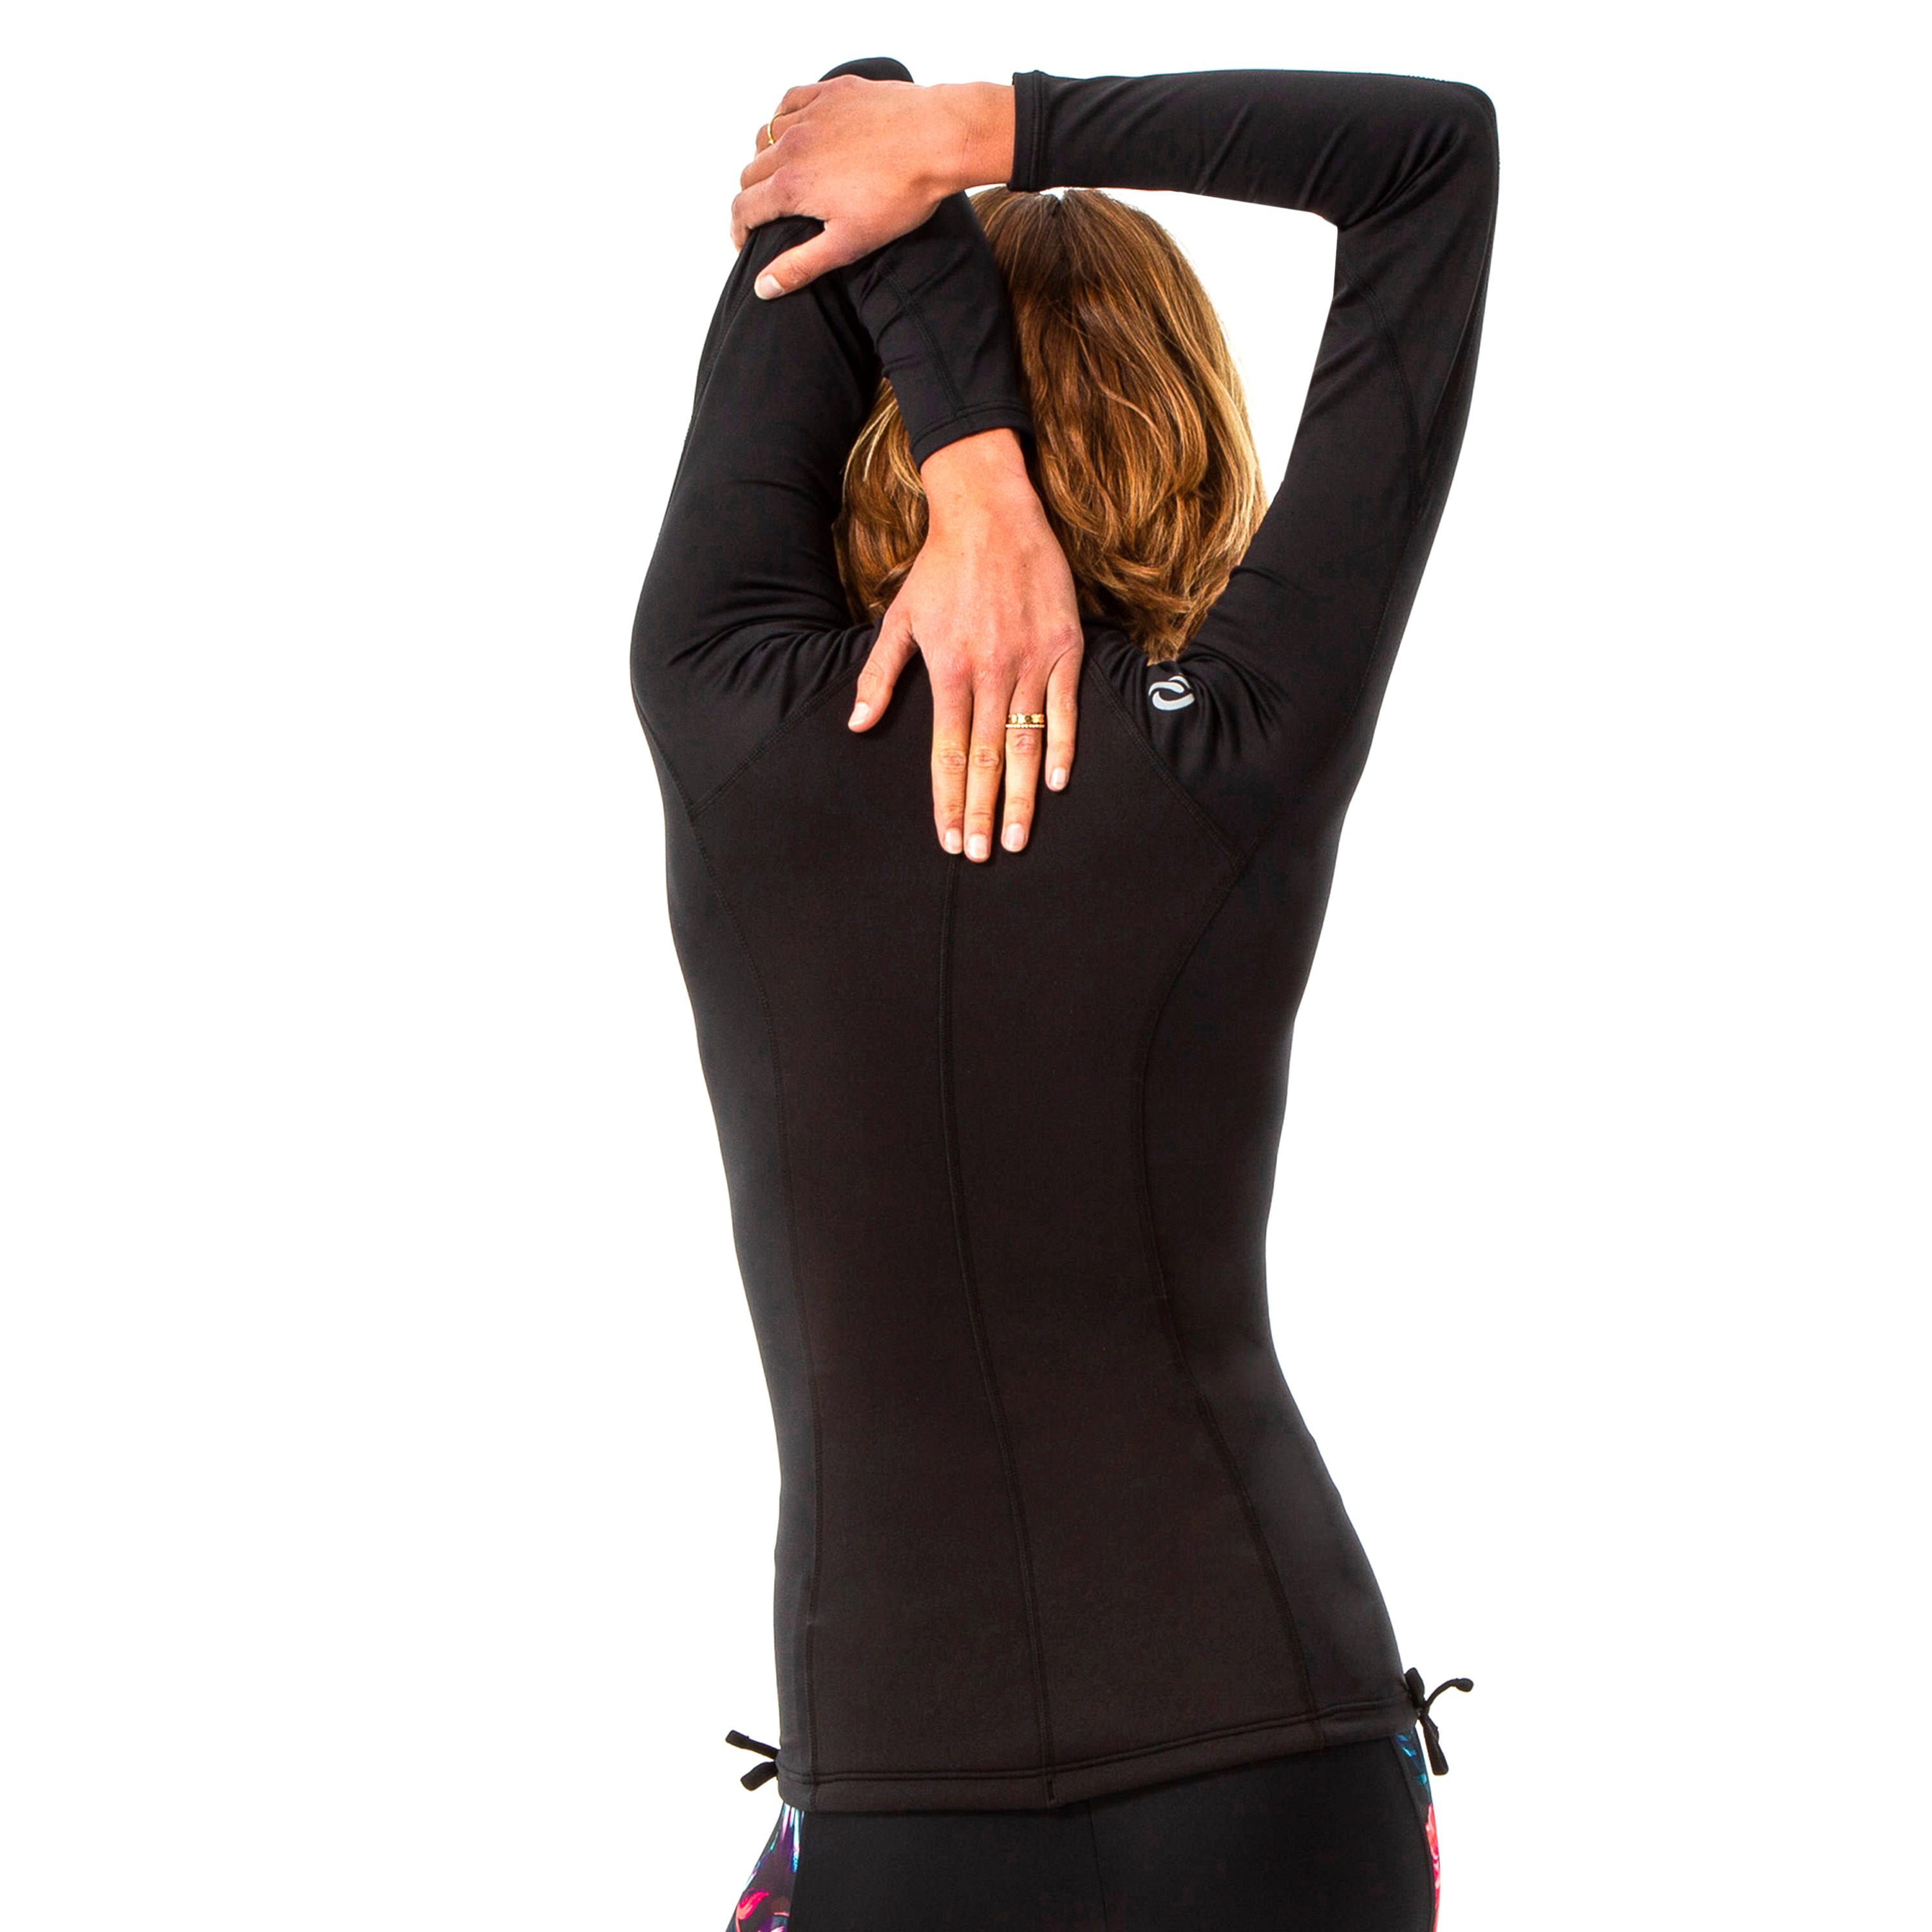 T-shirt anti-UV surf neoprene and fleece long sleeve women's black 3/6